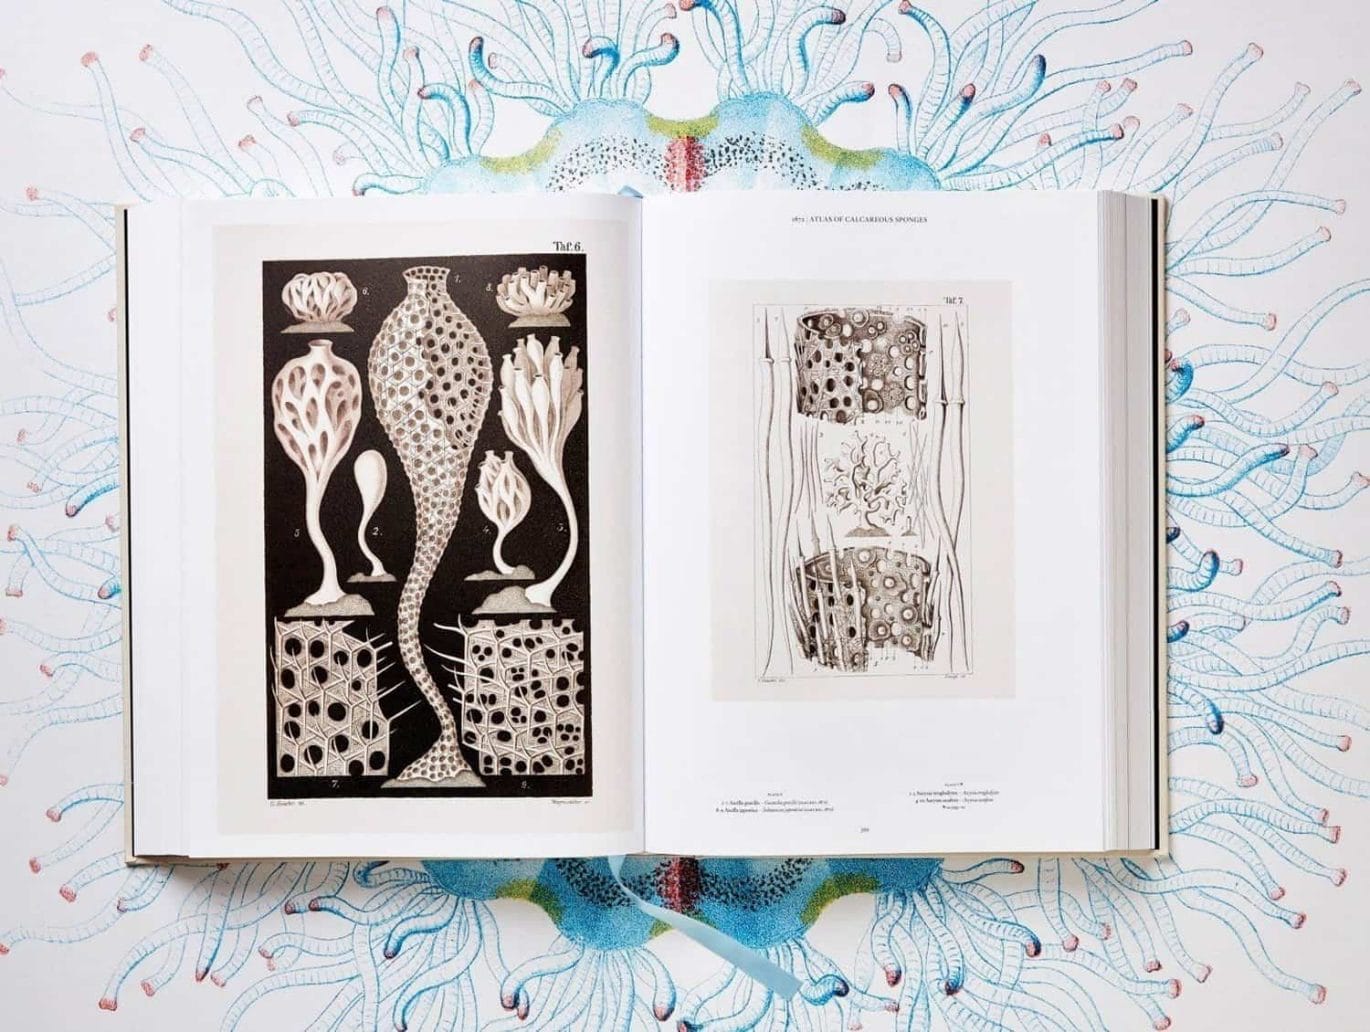 Boek met illustraties van Ernst Haeckel